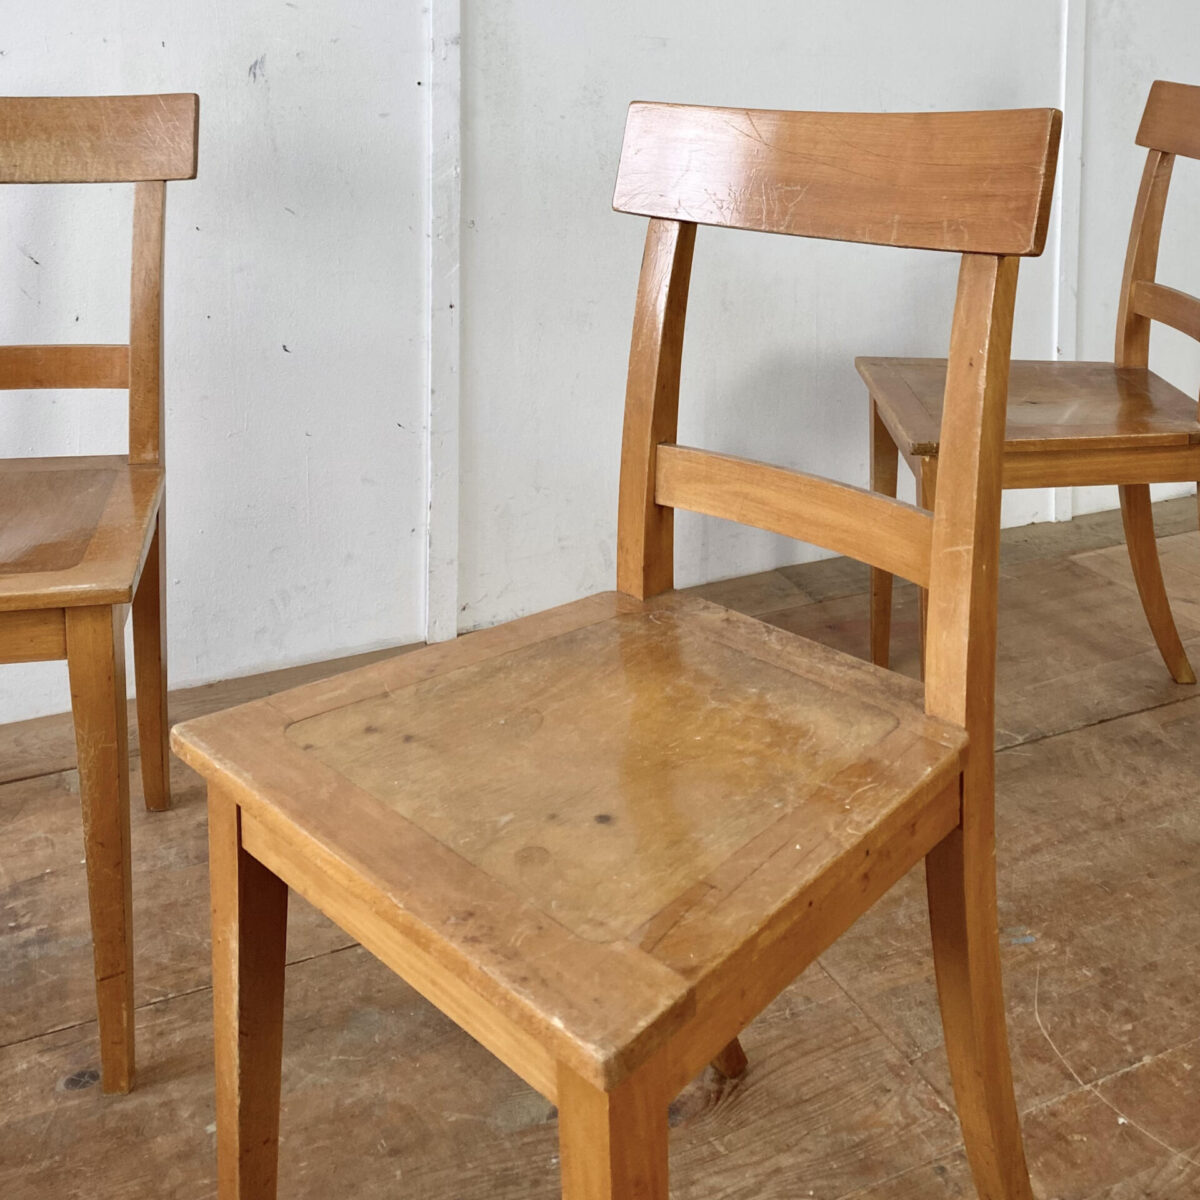 12 Buchenholz Stühle von Horgen Glarus. Preis pro Stuhl. Die Stühle sind in stabilem Zustand, die Oberflächen haben diverse Abnutzungen und teilweise Verfärbungen im Holz. Die Hinterbeine und Rückenlehne sind Dampfgebogen, ansonsten eher eckige Grundformen, ein mix aus Biedermeier Stuhl und Beizenstuhl. 